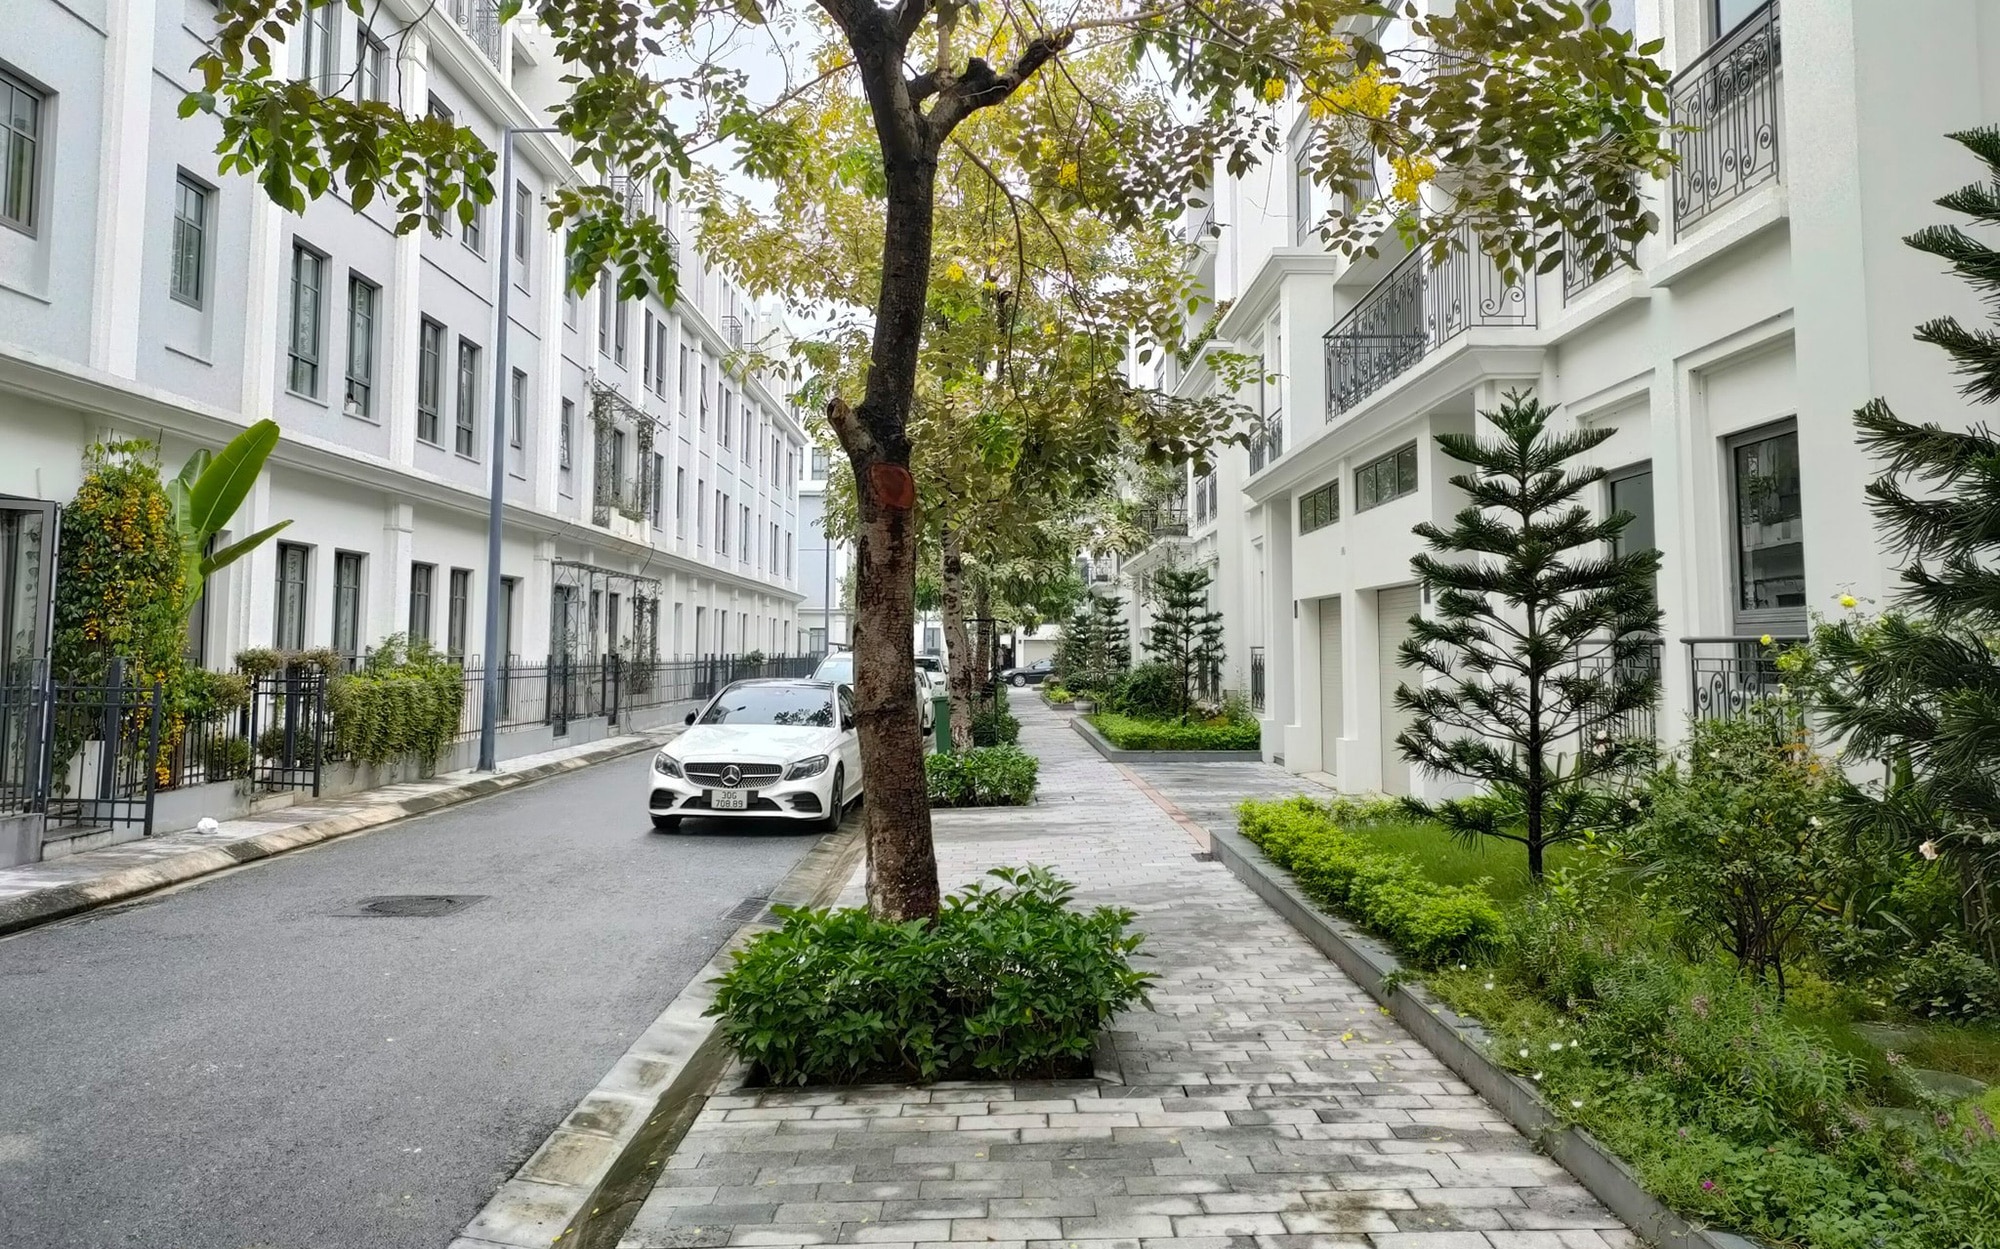 Immobilien – Der Grund dafür ist, dass die Nachfrage nach Stadthäusern und Villen in Ho-Chi-Minh-Stadt immer noch sehr gering ist